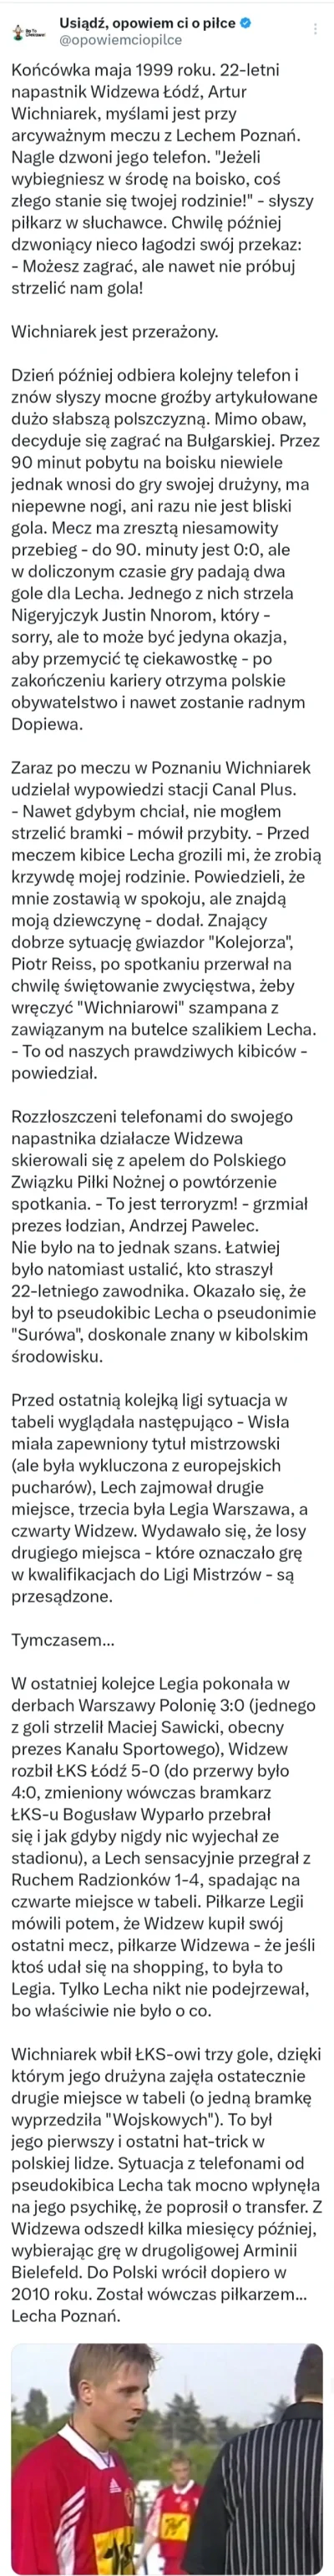 Piotrek7231 - #mecz #ekstraklasa #lechpoznan #widzew #pilkanozna #ciekawostki 
https:...